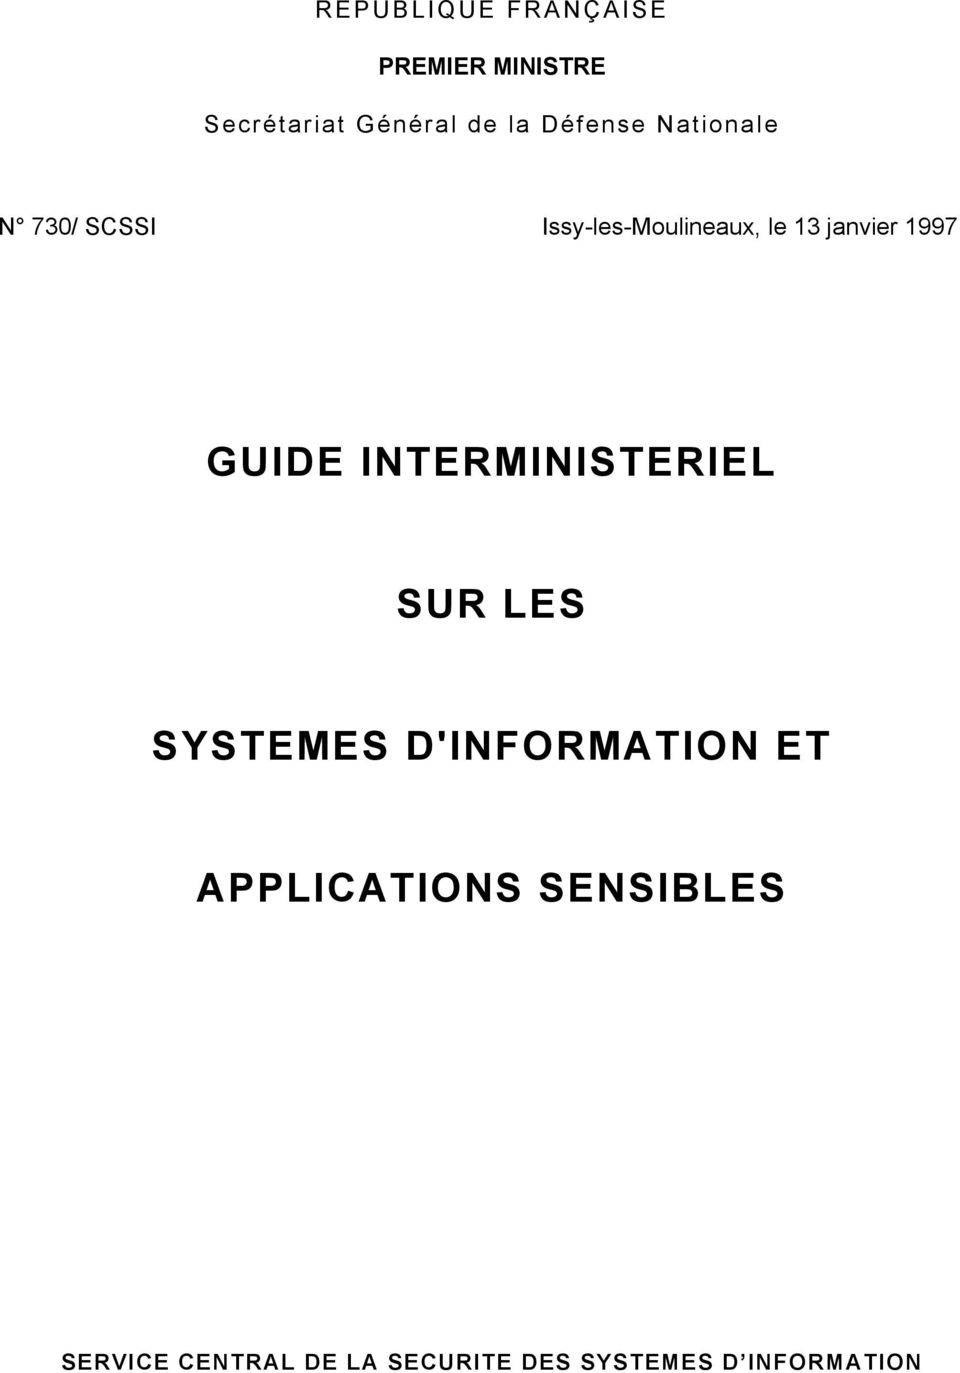 1997 GUIDE INTERMINISTERIEL SUR LES SYSTEMES D'INFORMATION ET